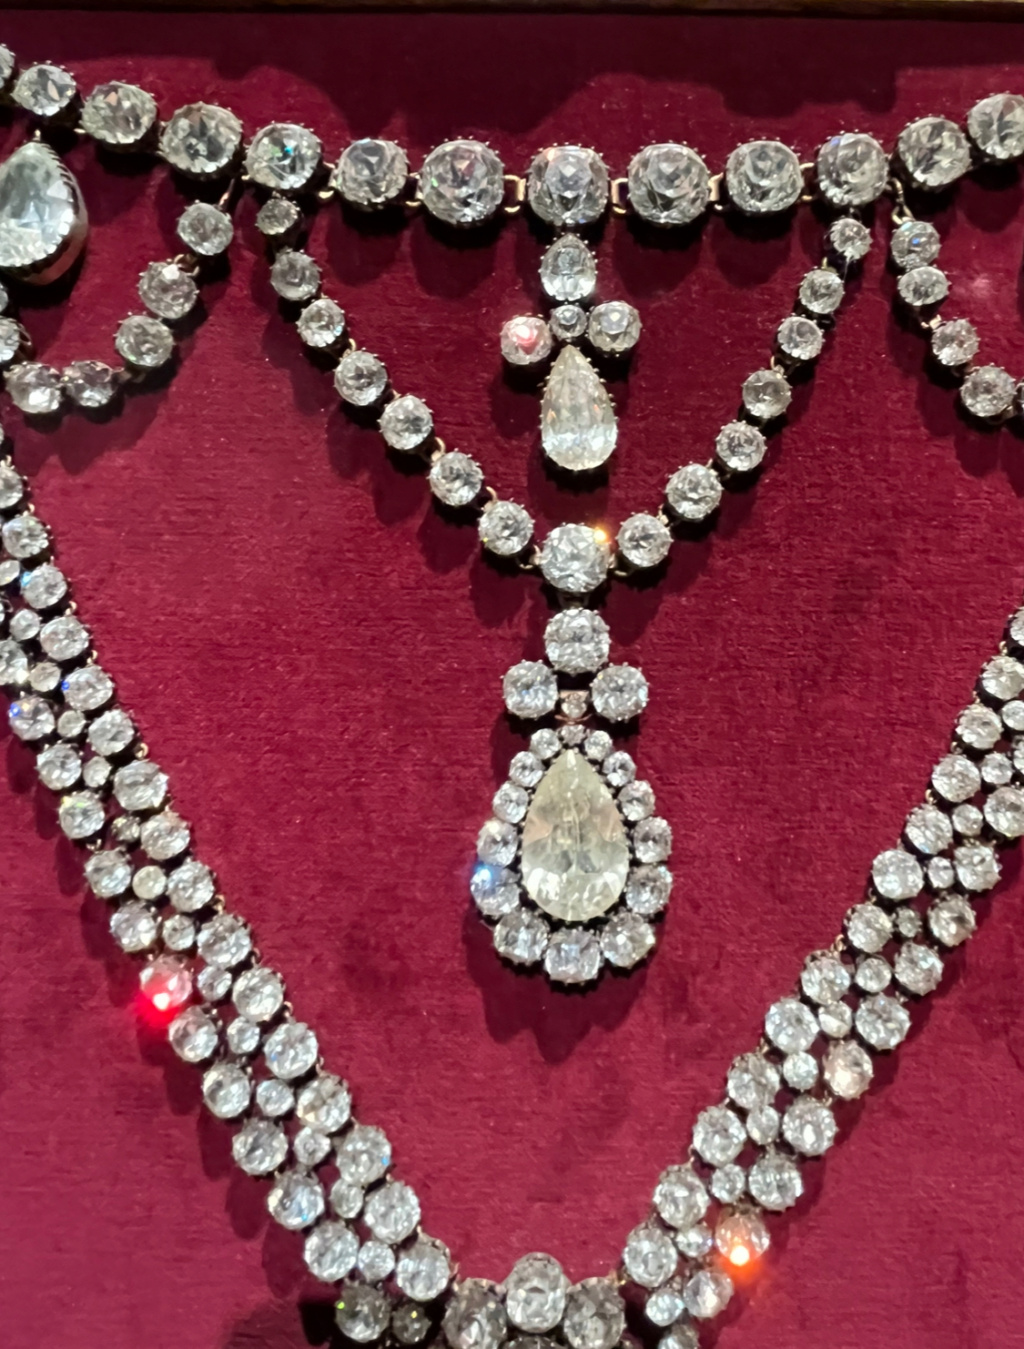 répliques - Le collier dit de la reine Marie-Antoinette (L'affaire du collier de la reine), et ses répliques - Page 2 Img_5413